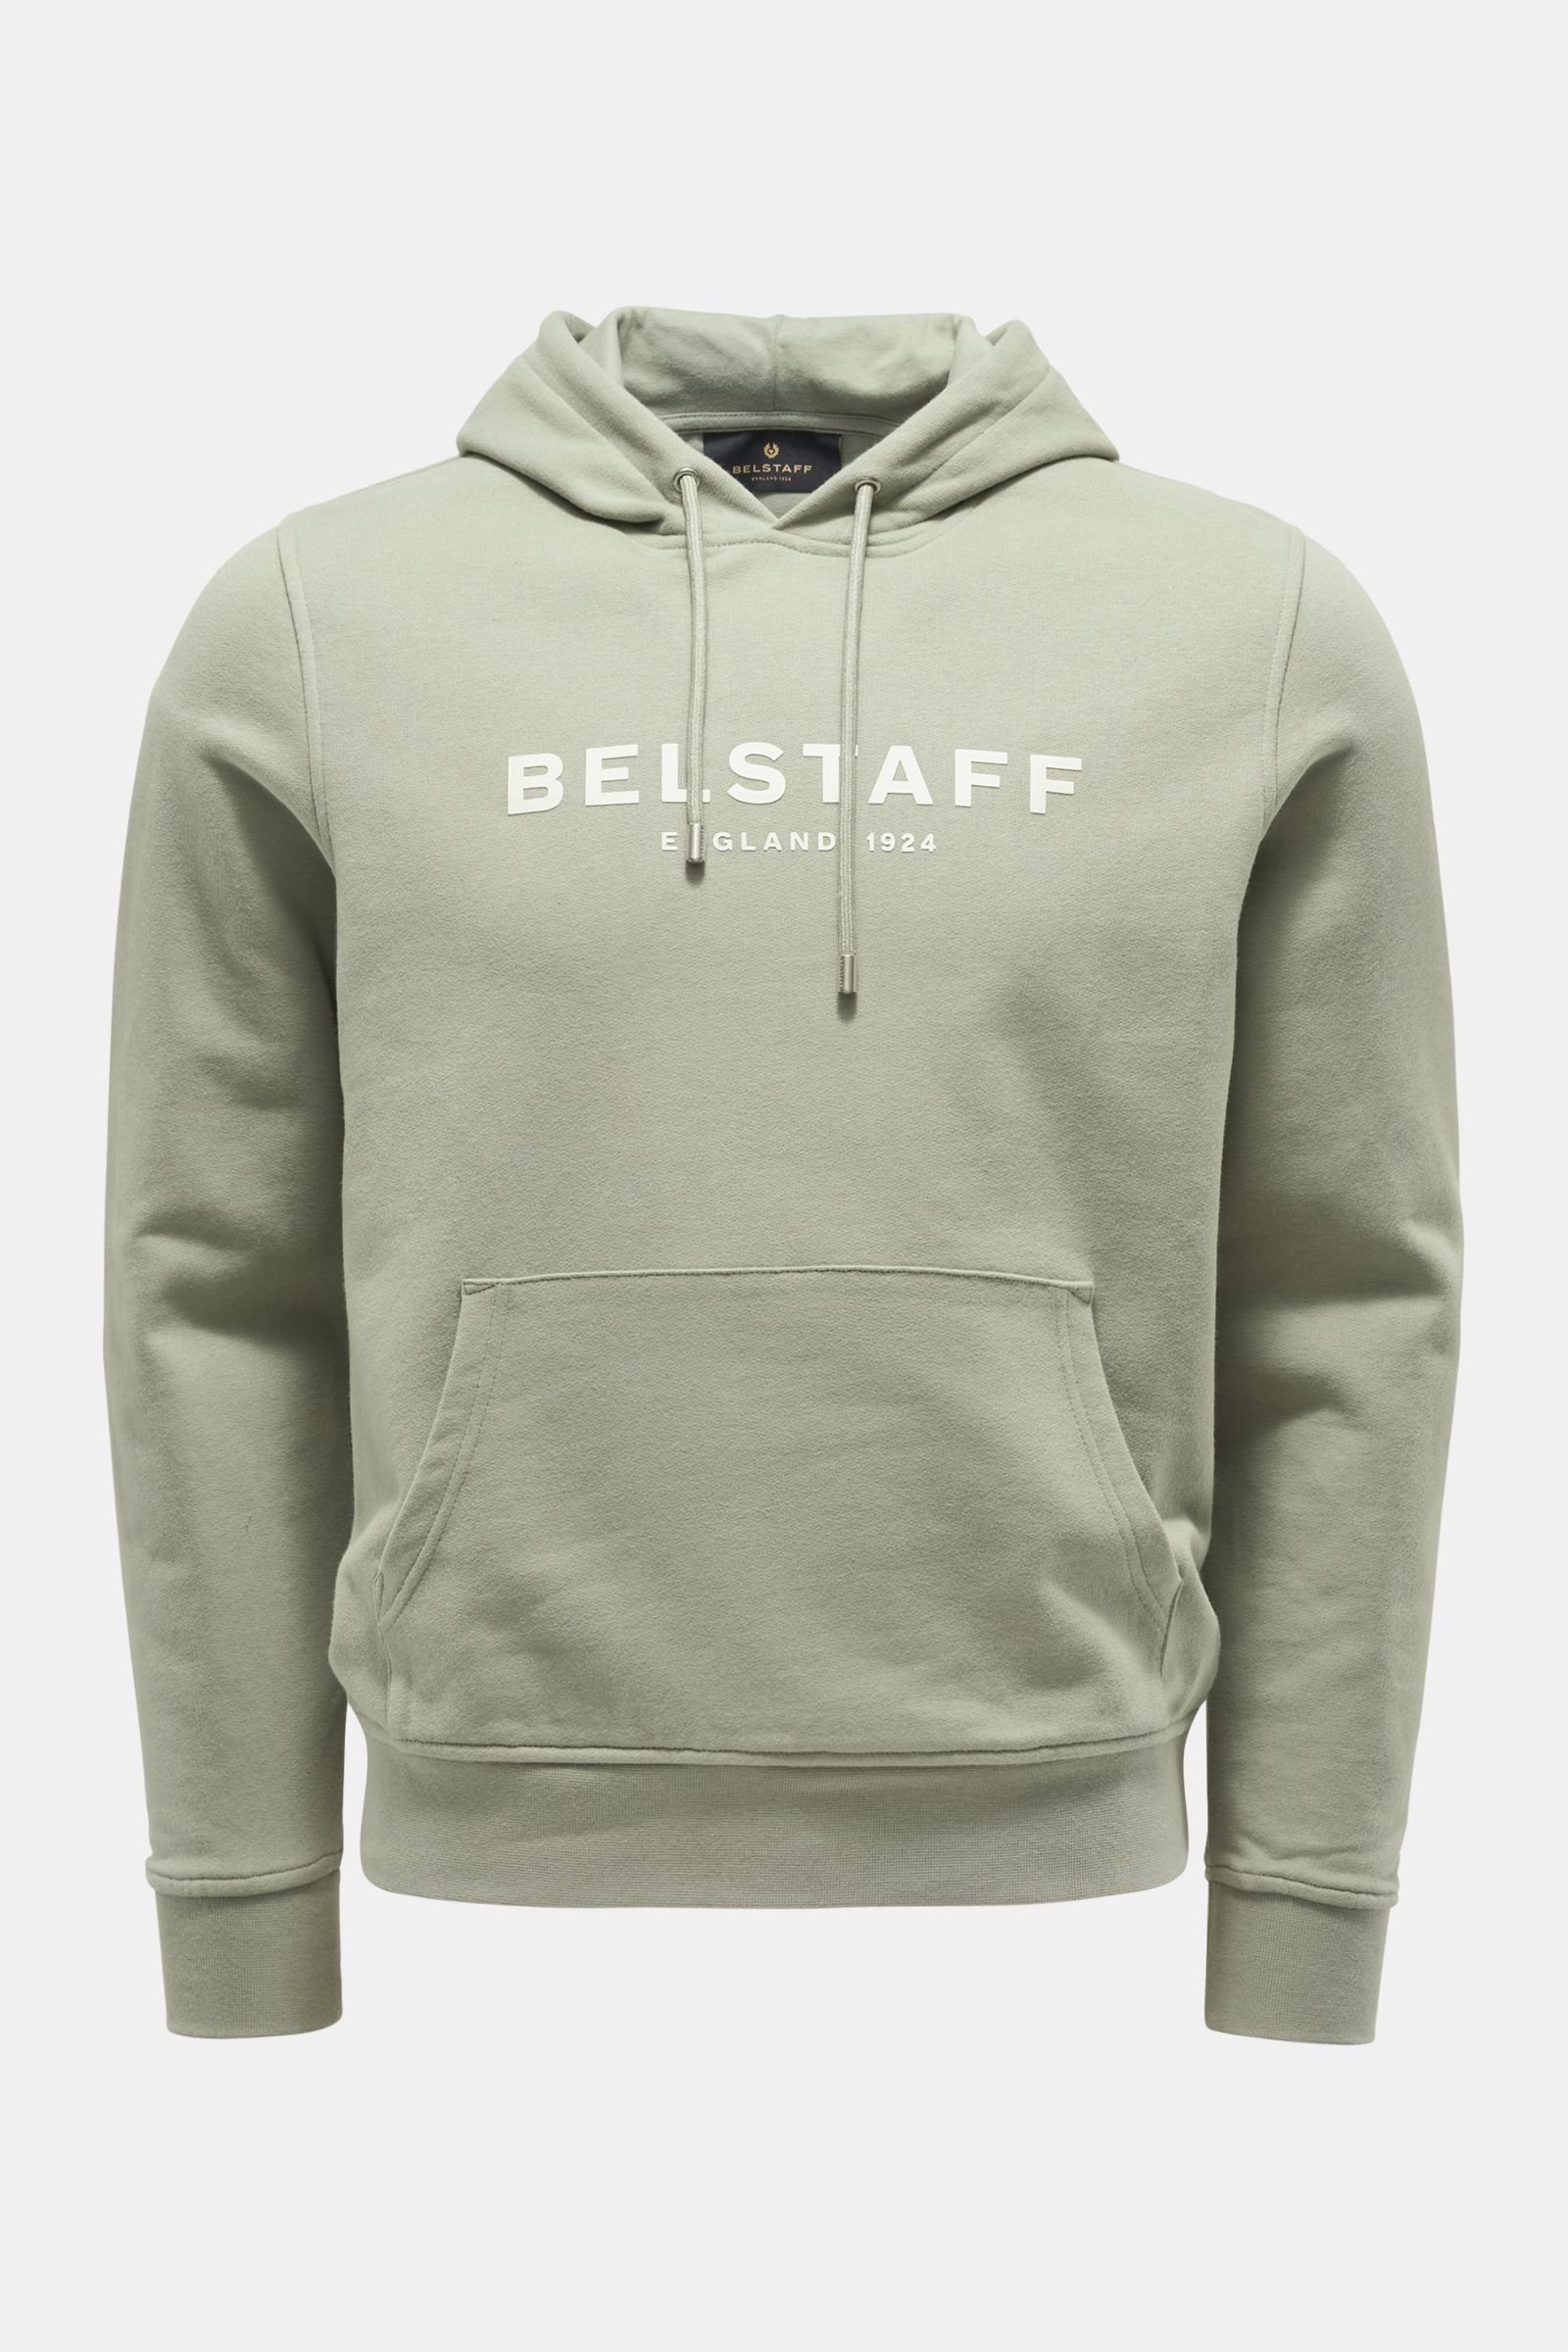 Onzin Premisse Worstelen BELSTAFF hooded jumper 'Belstaff 1924' grey-green | BRAUN Hamburg